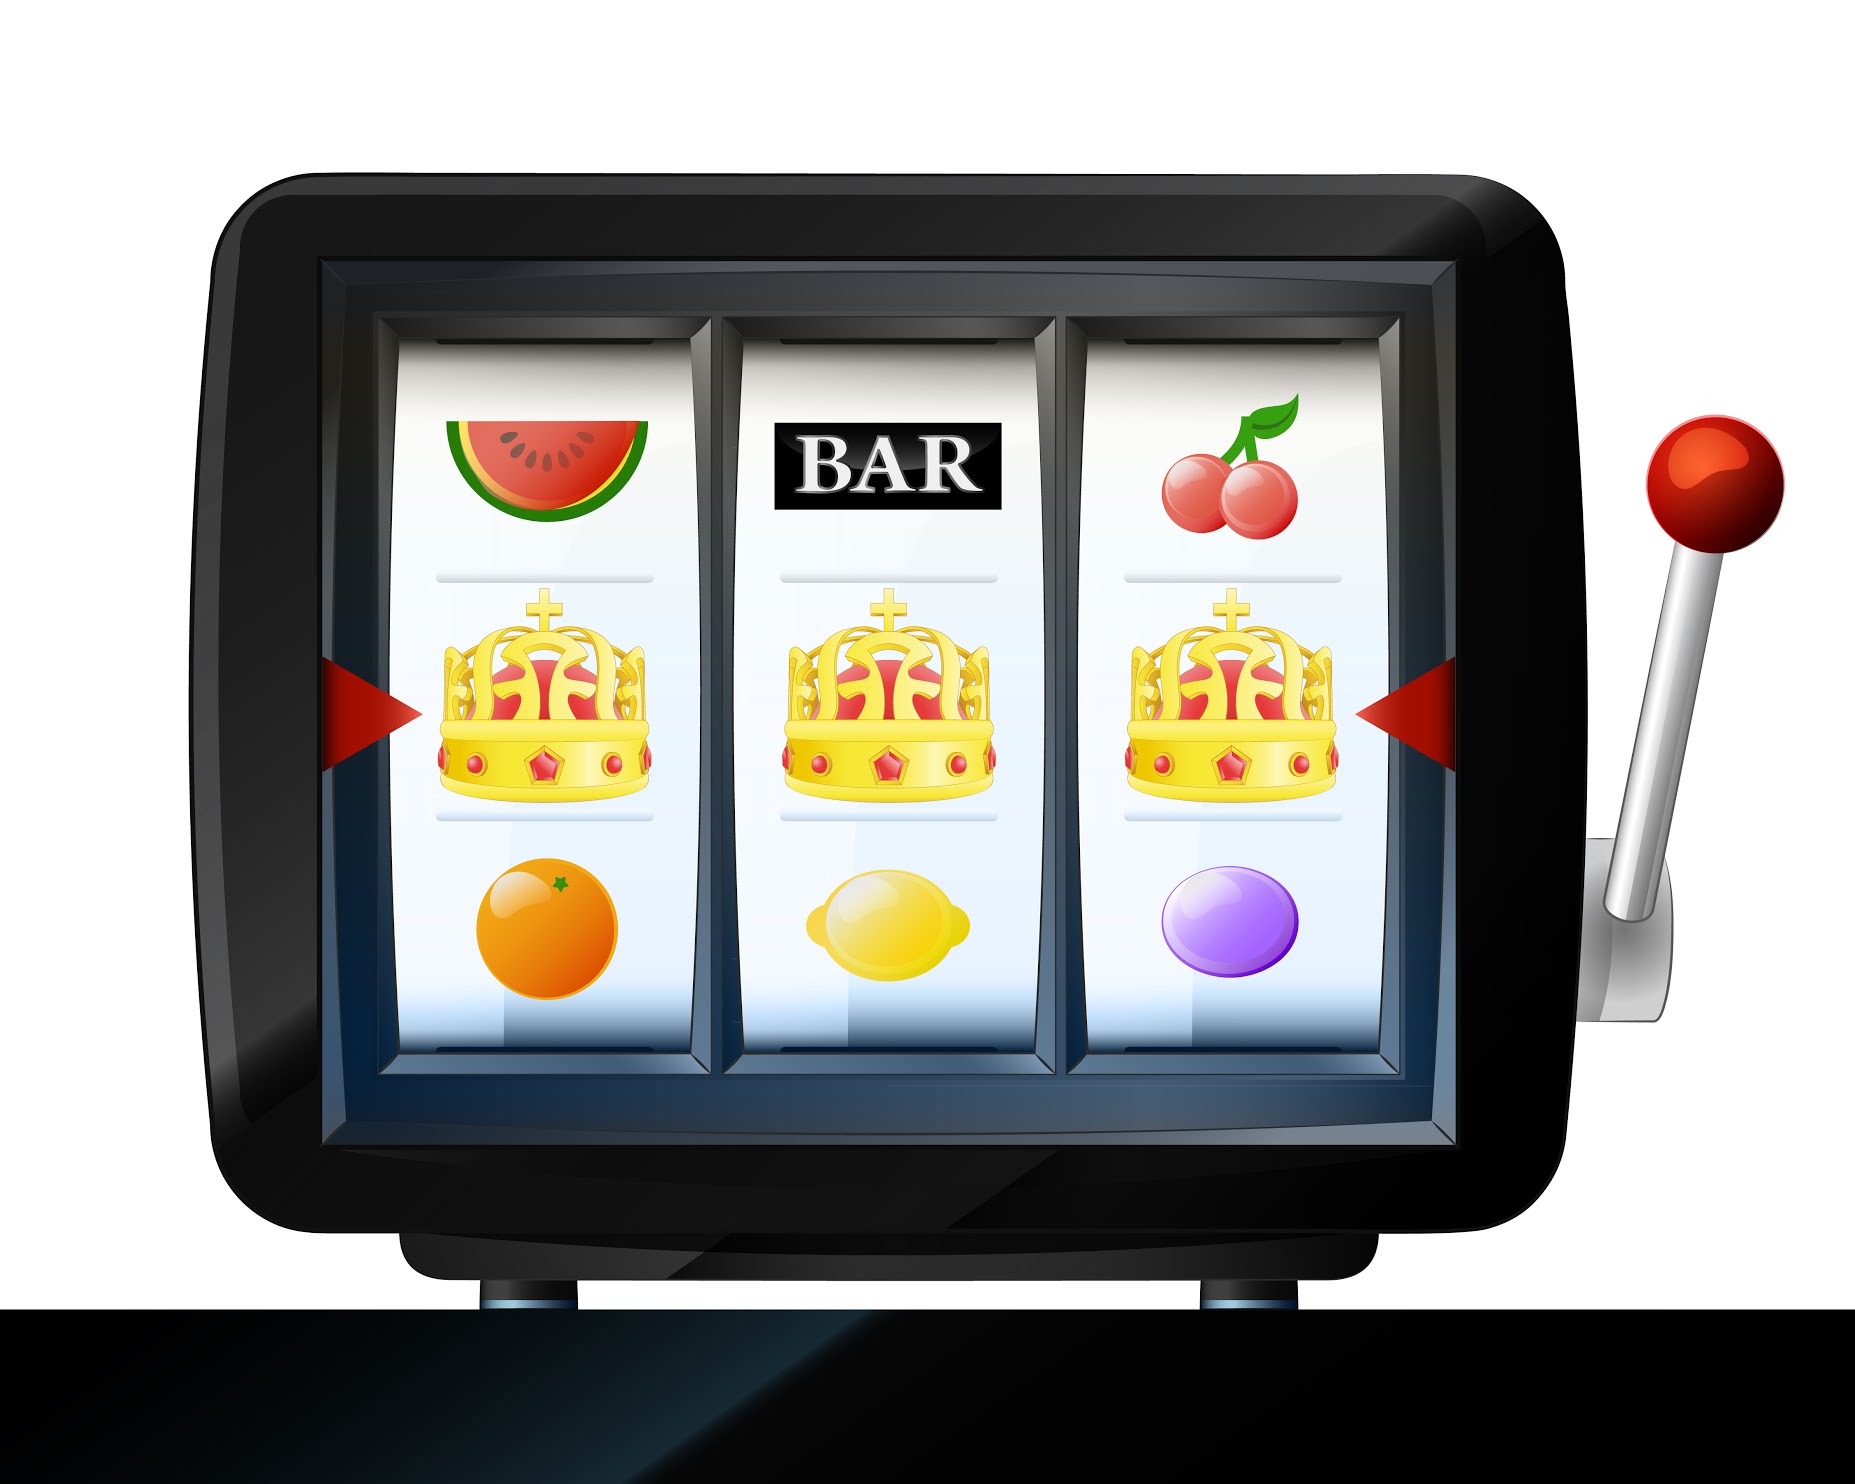 Увлекательная игра в онлайн казино на игровых автоматах Вулкан на реальные деньги